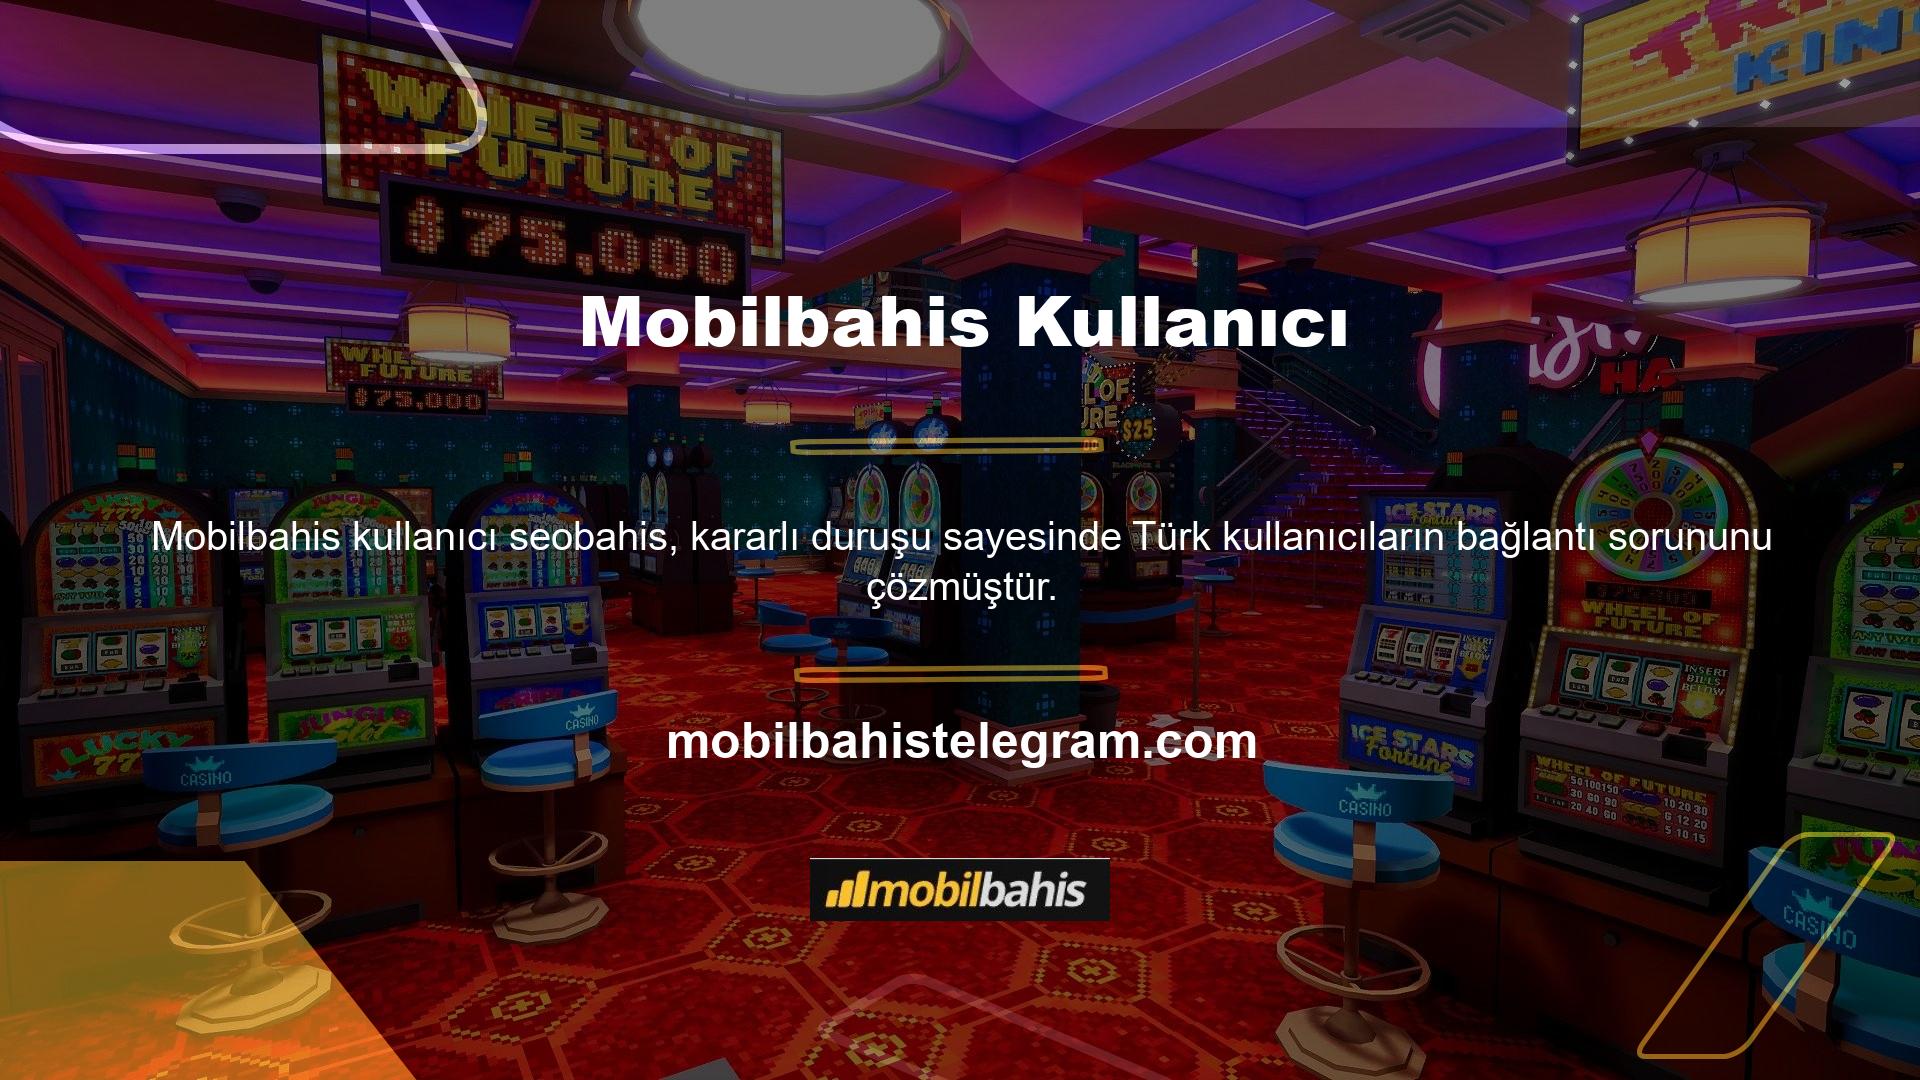 Türk hukukuna göre Mobilbahis web sitelerine bağlı ticari şirketlerin kapatılması alışılagelmiş bir durum değildir